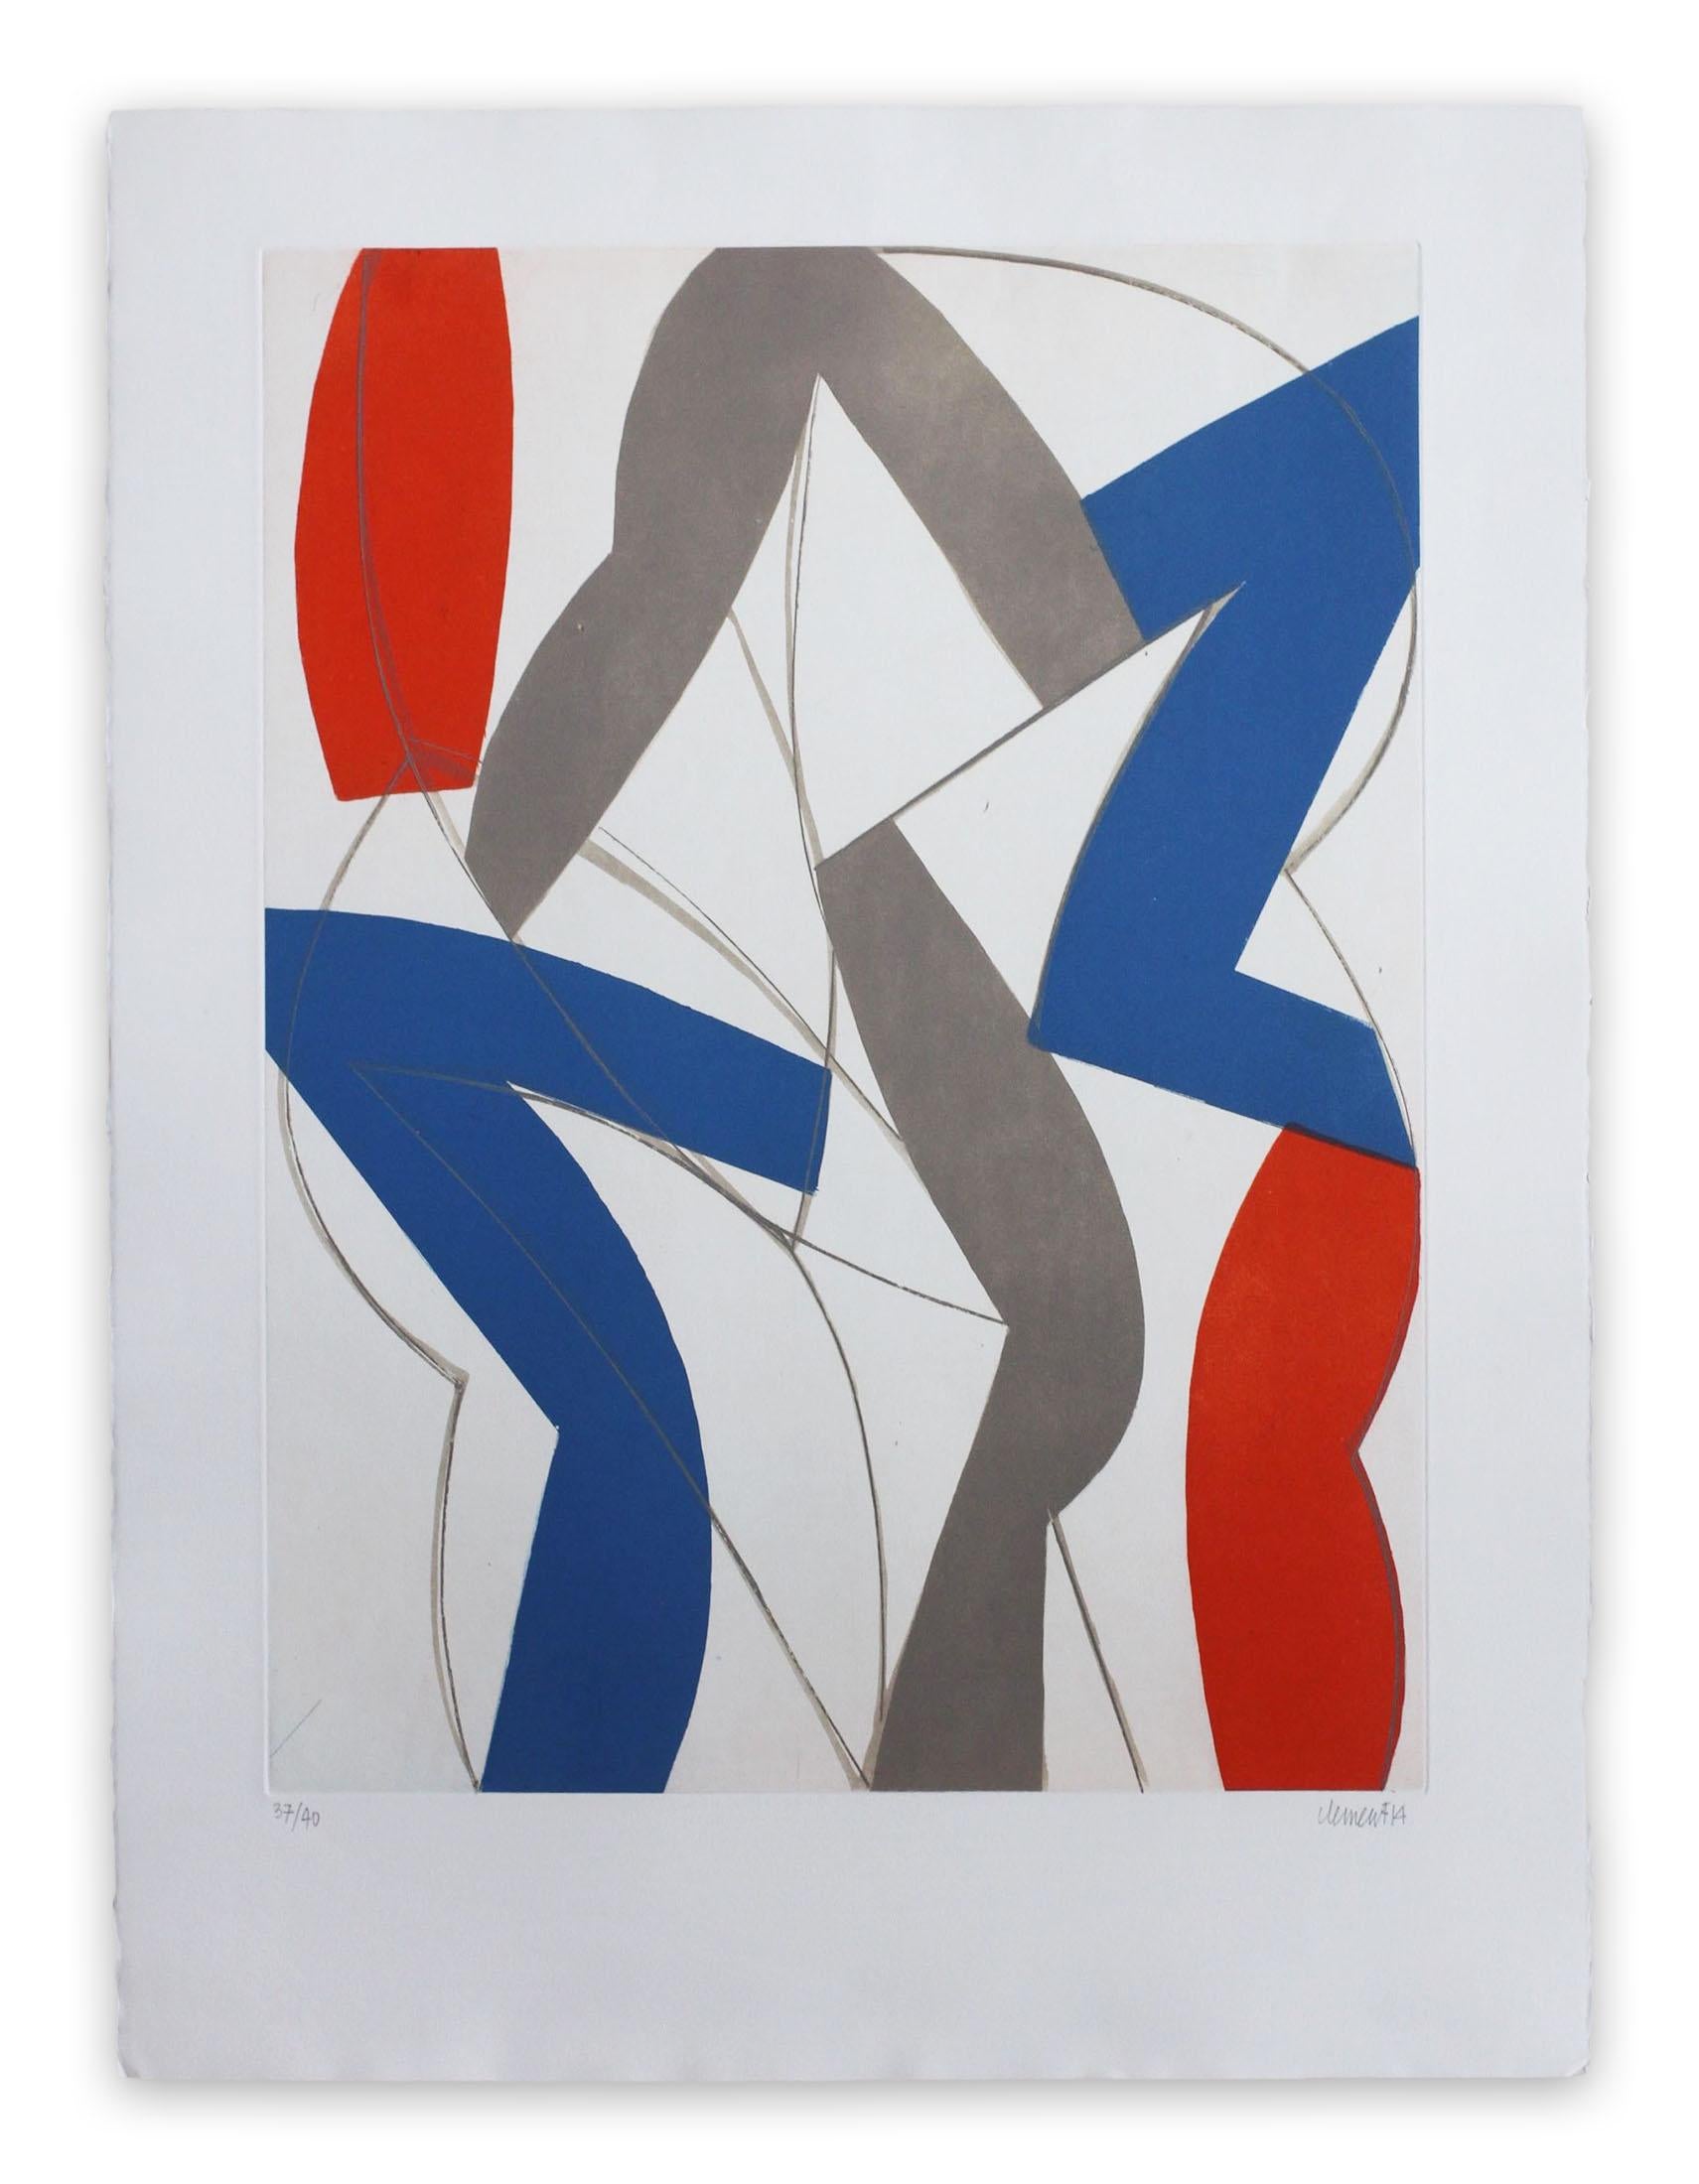 Alain Clément Abstract Print - 14AV11G-2014 (Abstract print)